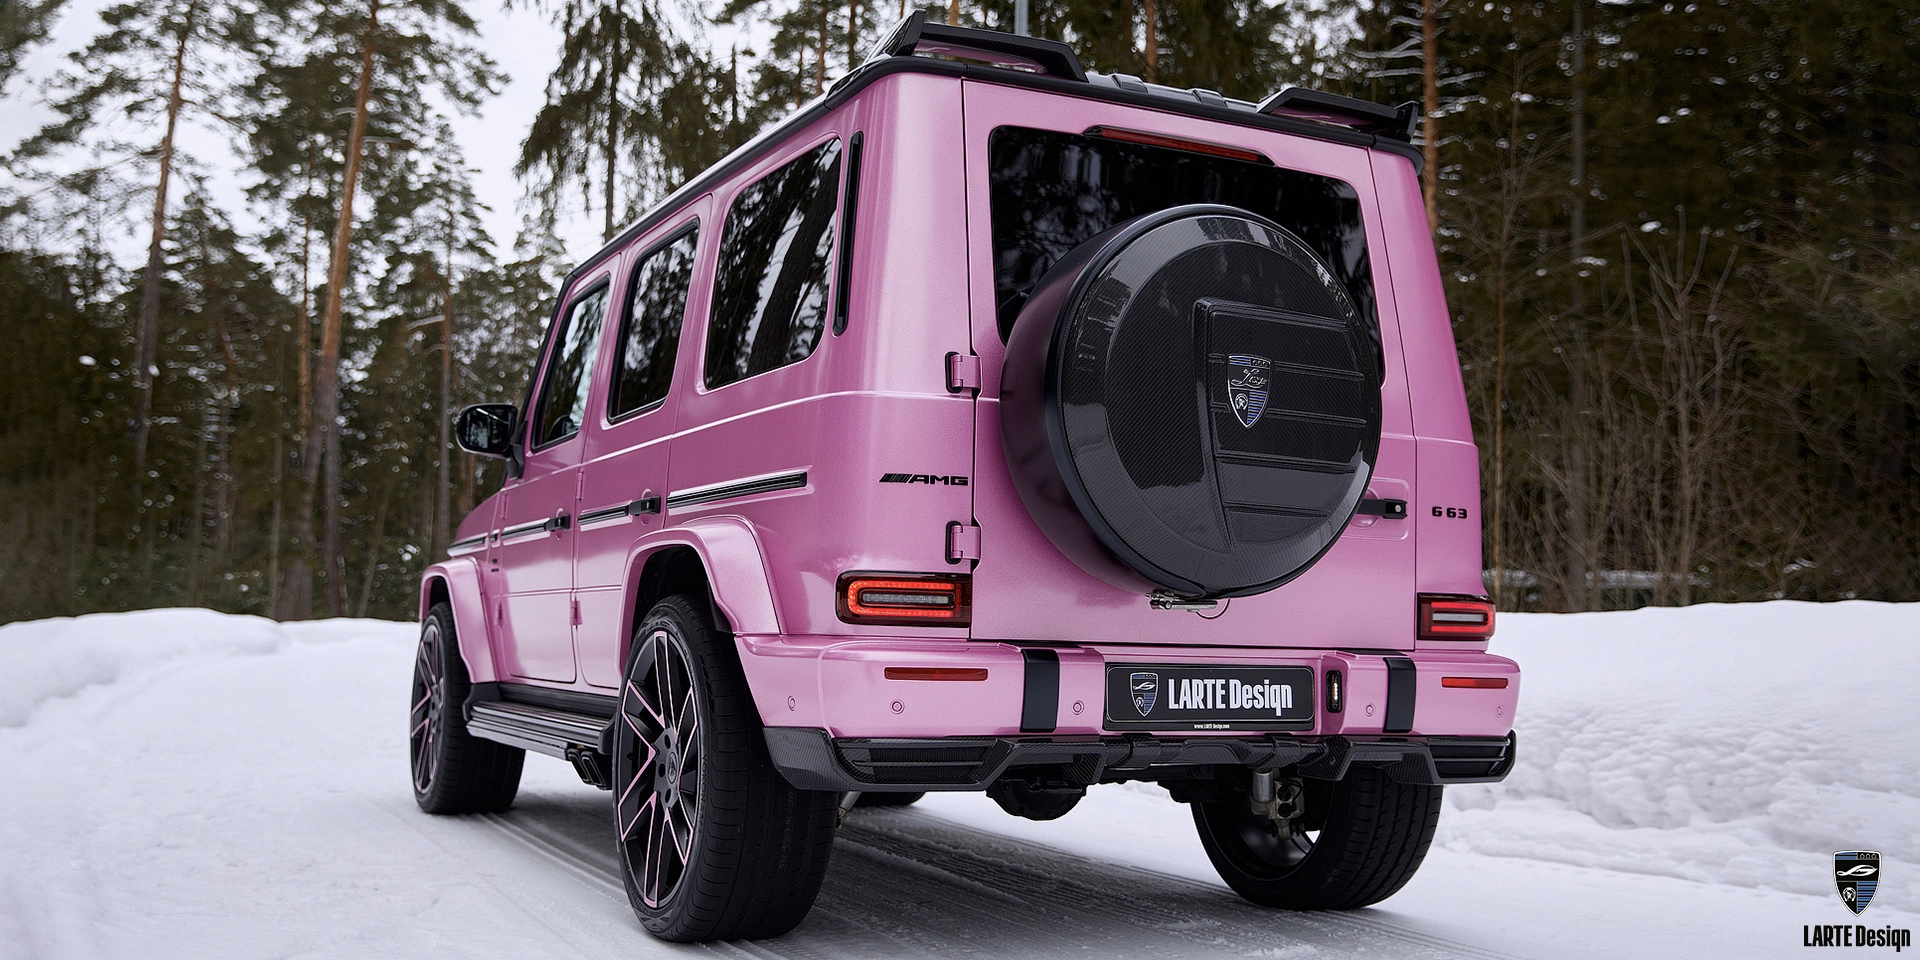 Kaufen Sie eine Carbon-Faser-Heckschürzen-Diffusor für den Mercedes-Benz G-Klasse G500 W463 in Wickelfolie Pink 2022